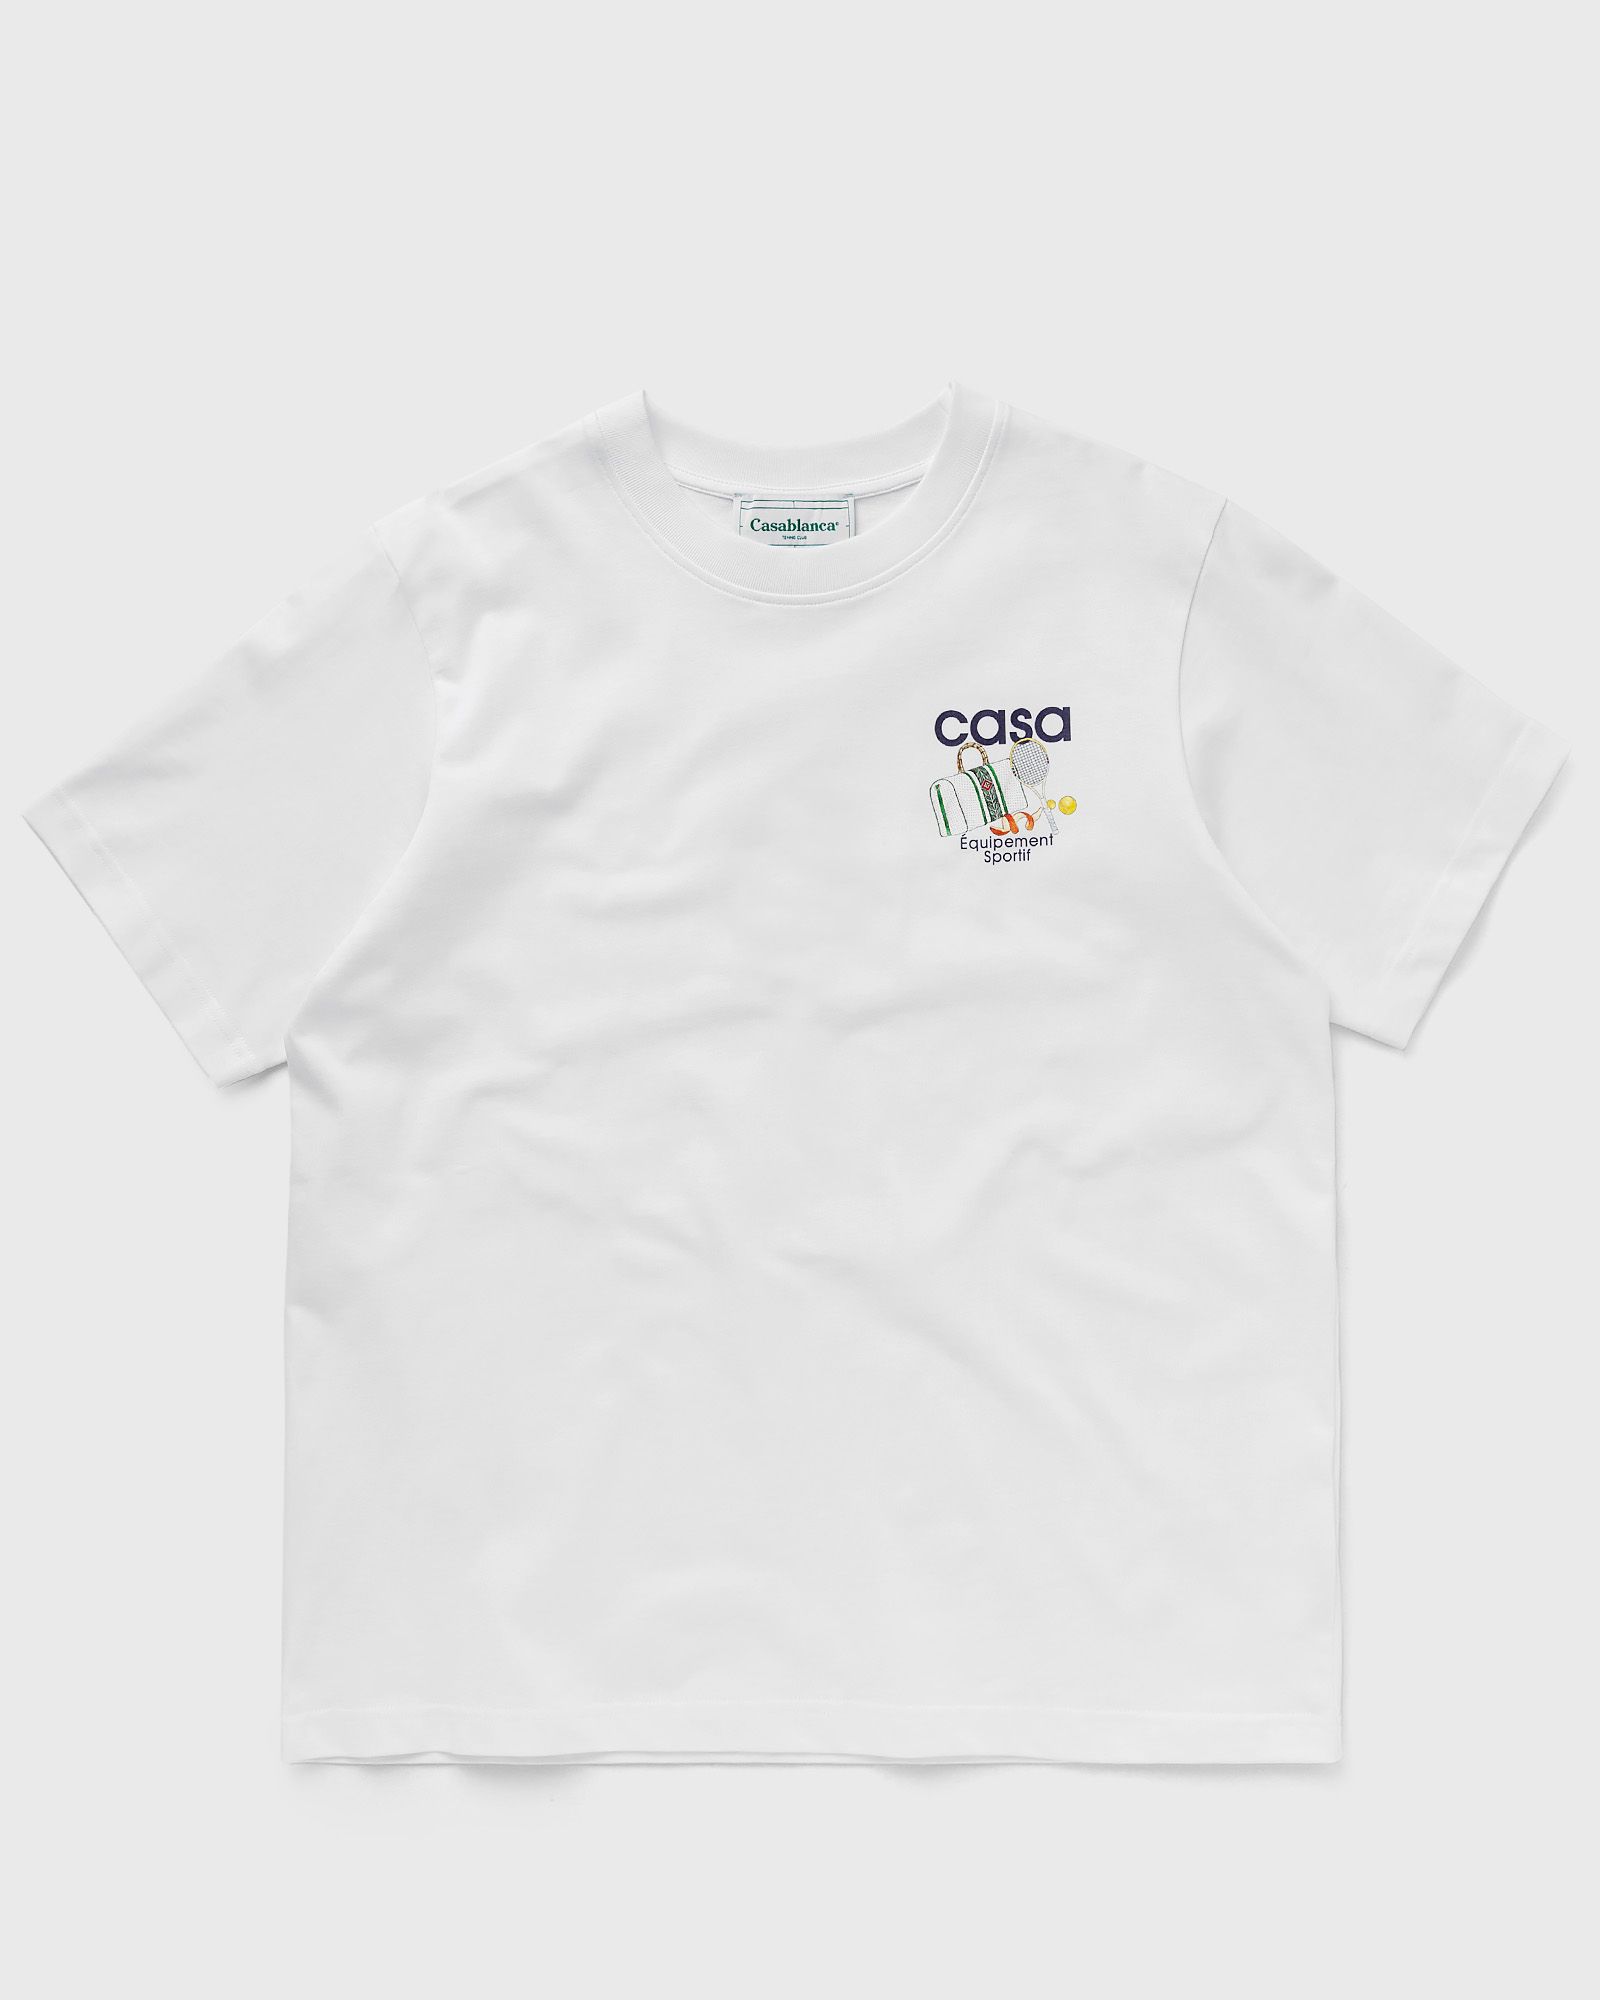 Casablanca - equipement sportif printed unisex t-shirt men shortsleeves white in größe:3xl